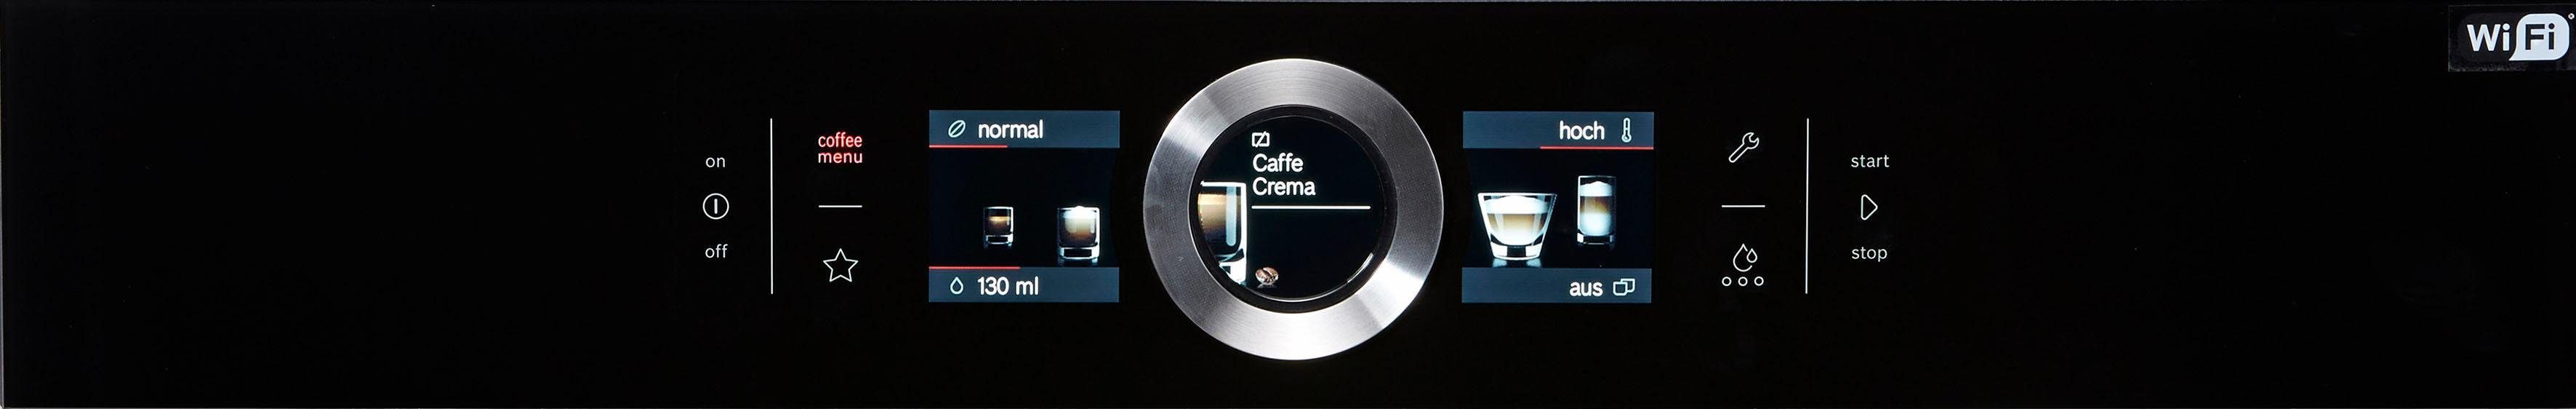 Einbau-Kaffeevollautomat BOSCH CTL636EB6